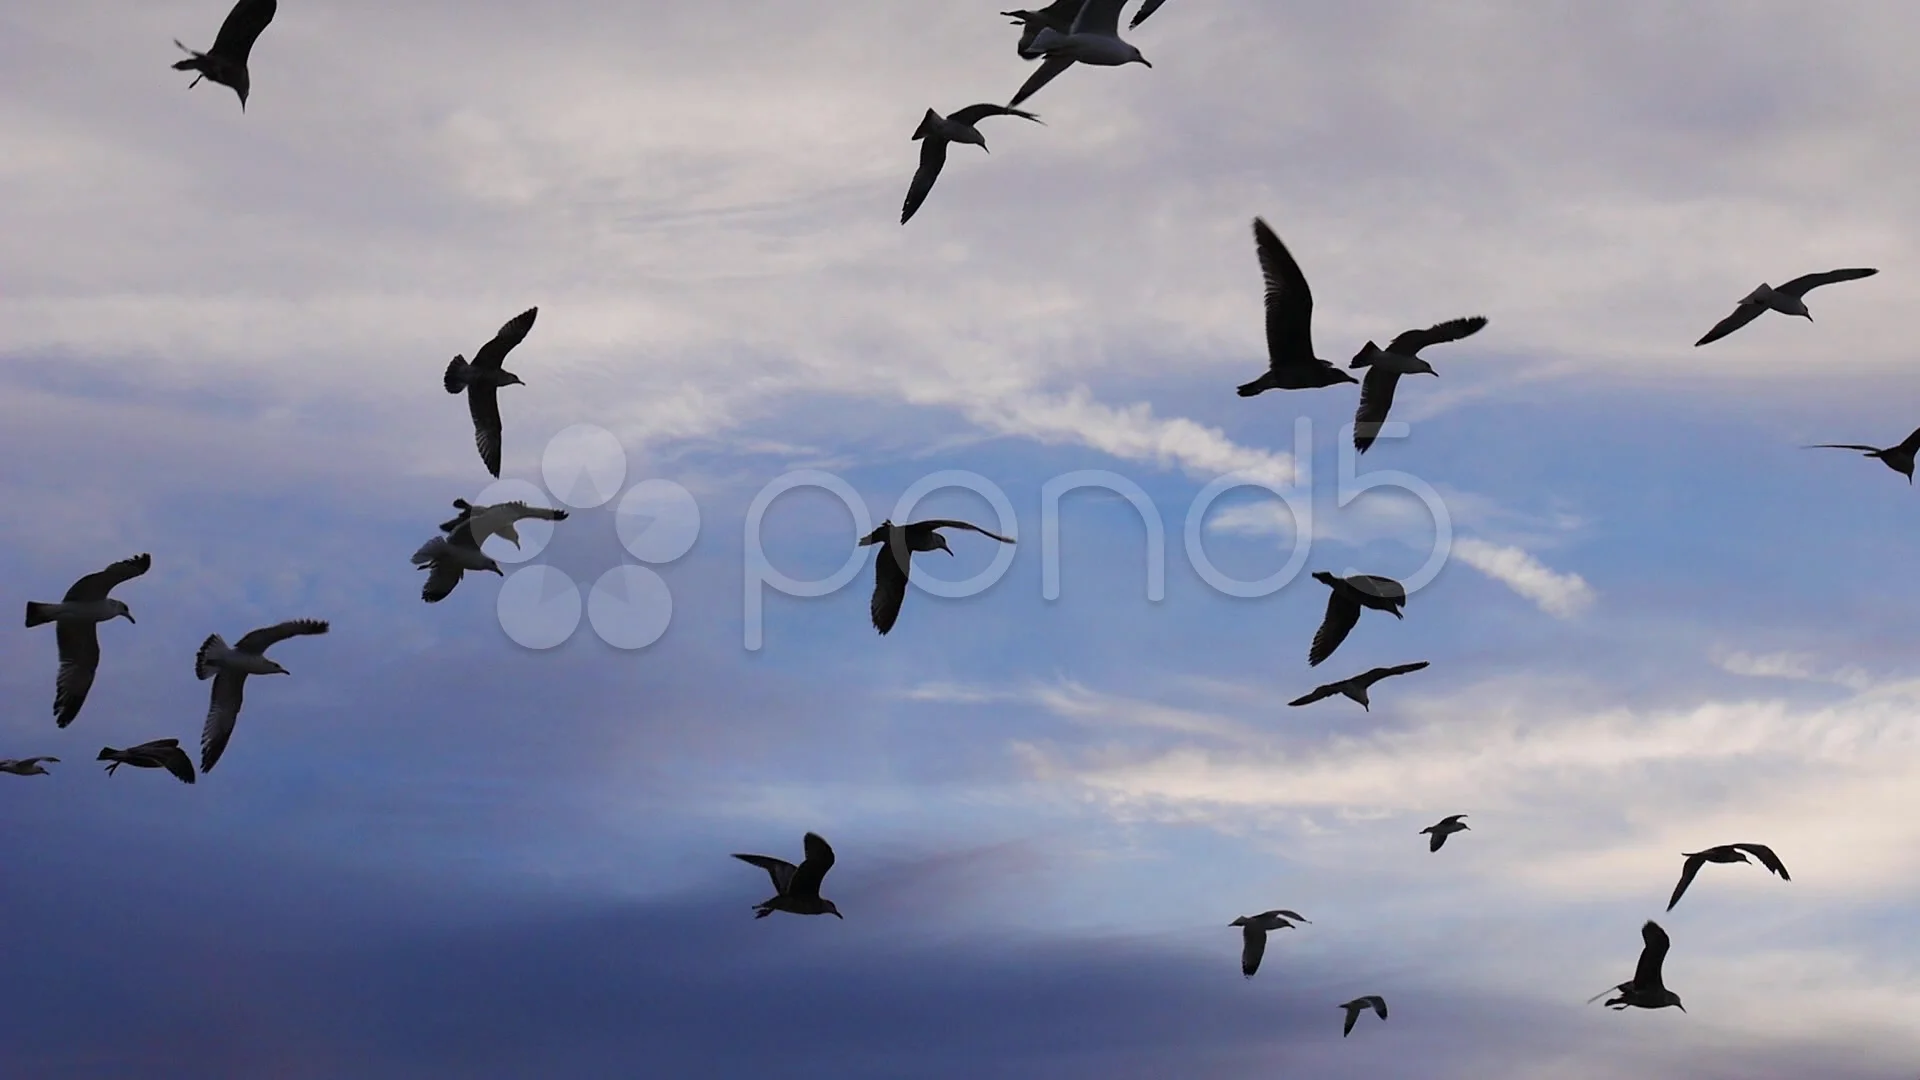 Những chú chim hải âu đang bay trên trời xanh thật đẹp mắt. Cùng xem hình ảnh để chiêm ngưỡng vẻ đẹp của chúng nhé!